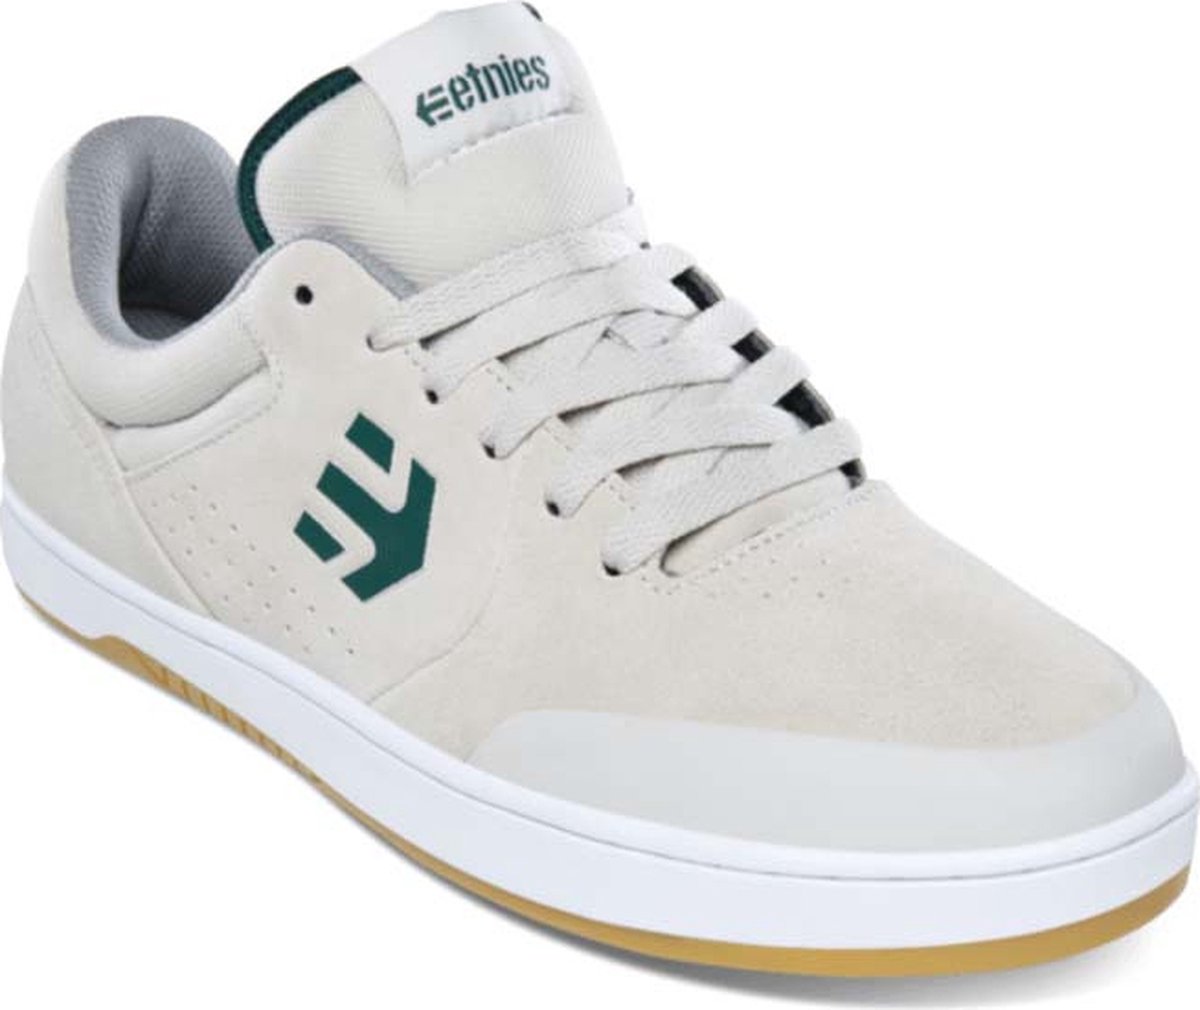 Etnies - Marana - Maat 42.5 - Wit - Groen - Skate schoen - Casual schoen